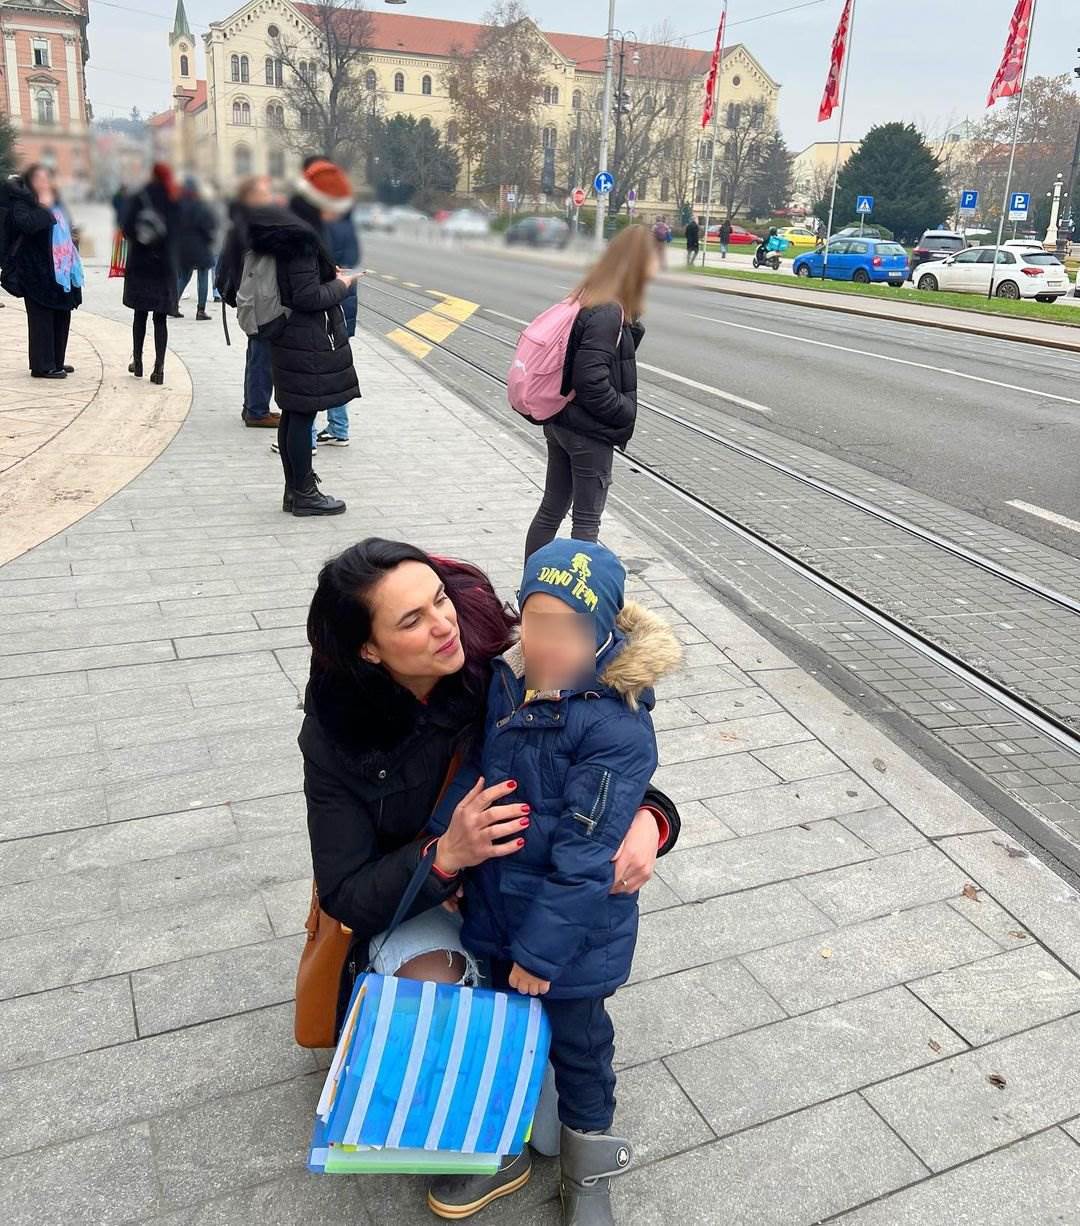 Glumica Marijana Mikulić ima sina s poteškoćama u razvoju